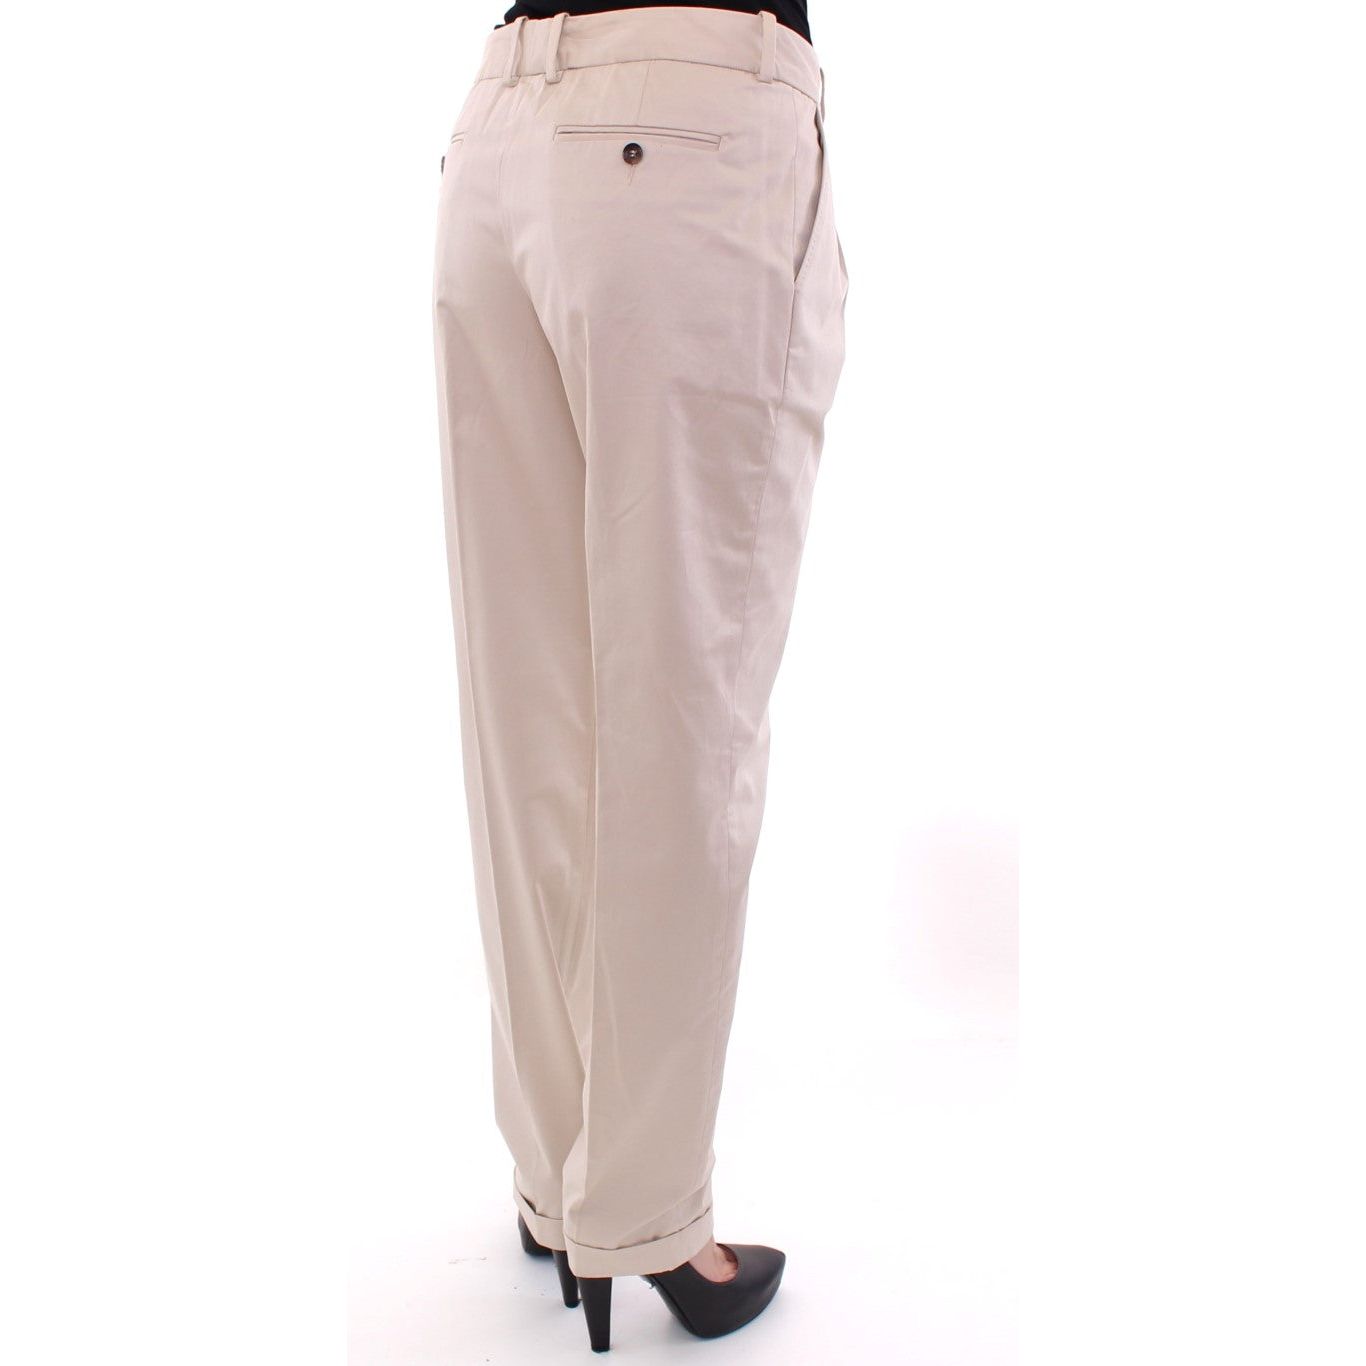 Dolce & Gabbana Elegant Beige Regular Fit Cotton Pants Jeans & Pants beige-cotton-chinos-pants